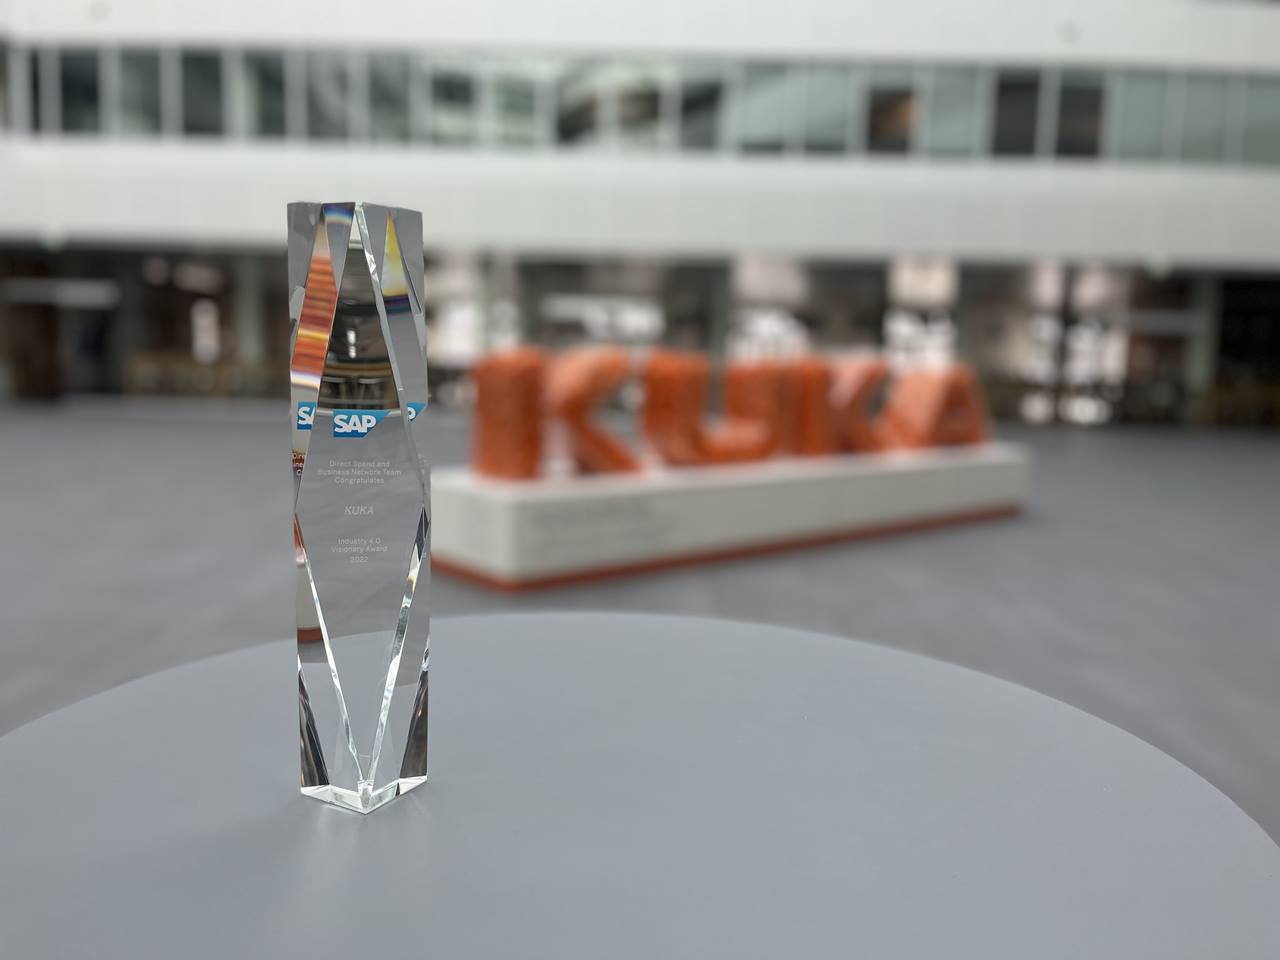 KUKA receives SAP Award